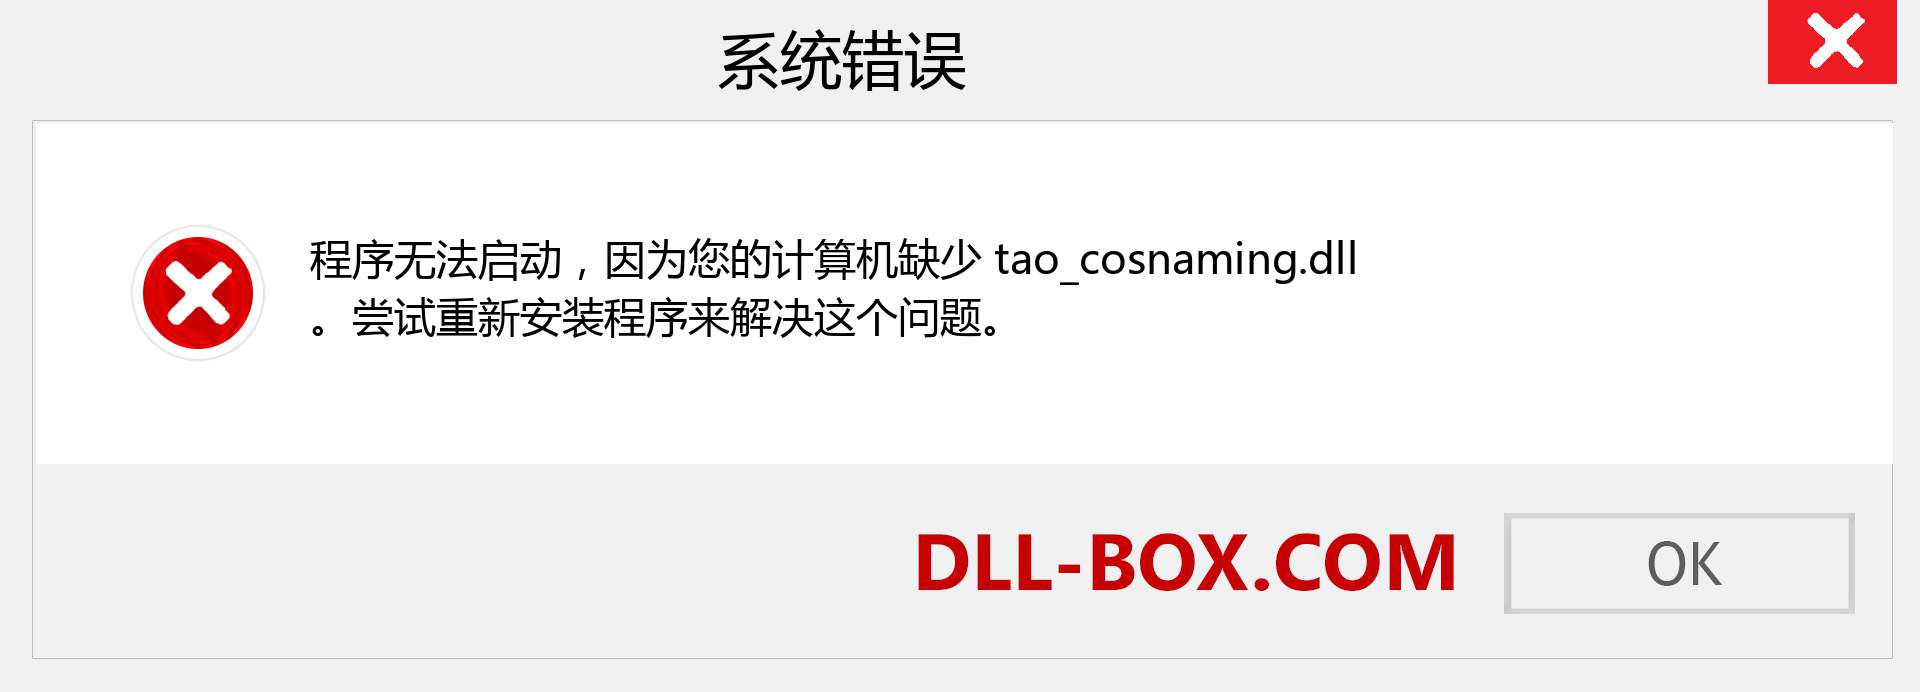 tao_cosnaming.dll 文件丢失？。 适用于 Windows 7、8、10 的下载 - 修复 Windows、照片、图像上的 tao_cosnaming dll 丢失错误